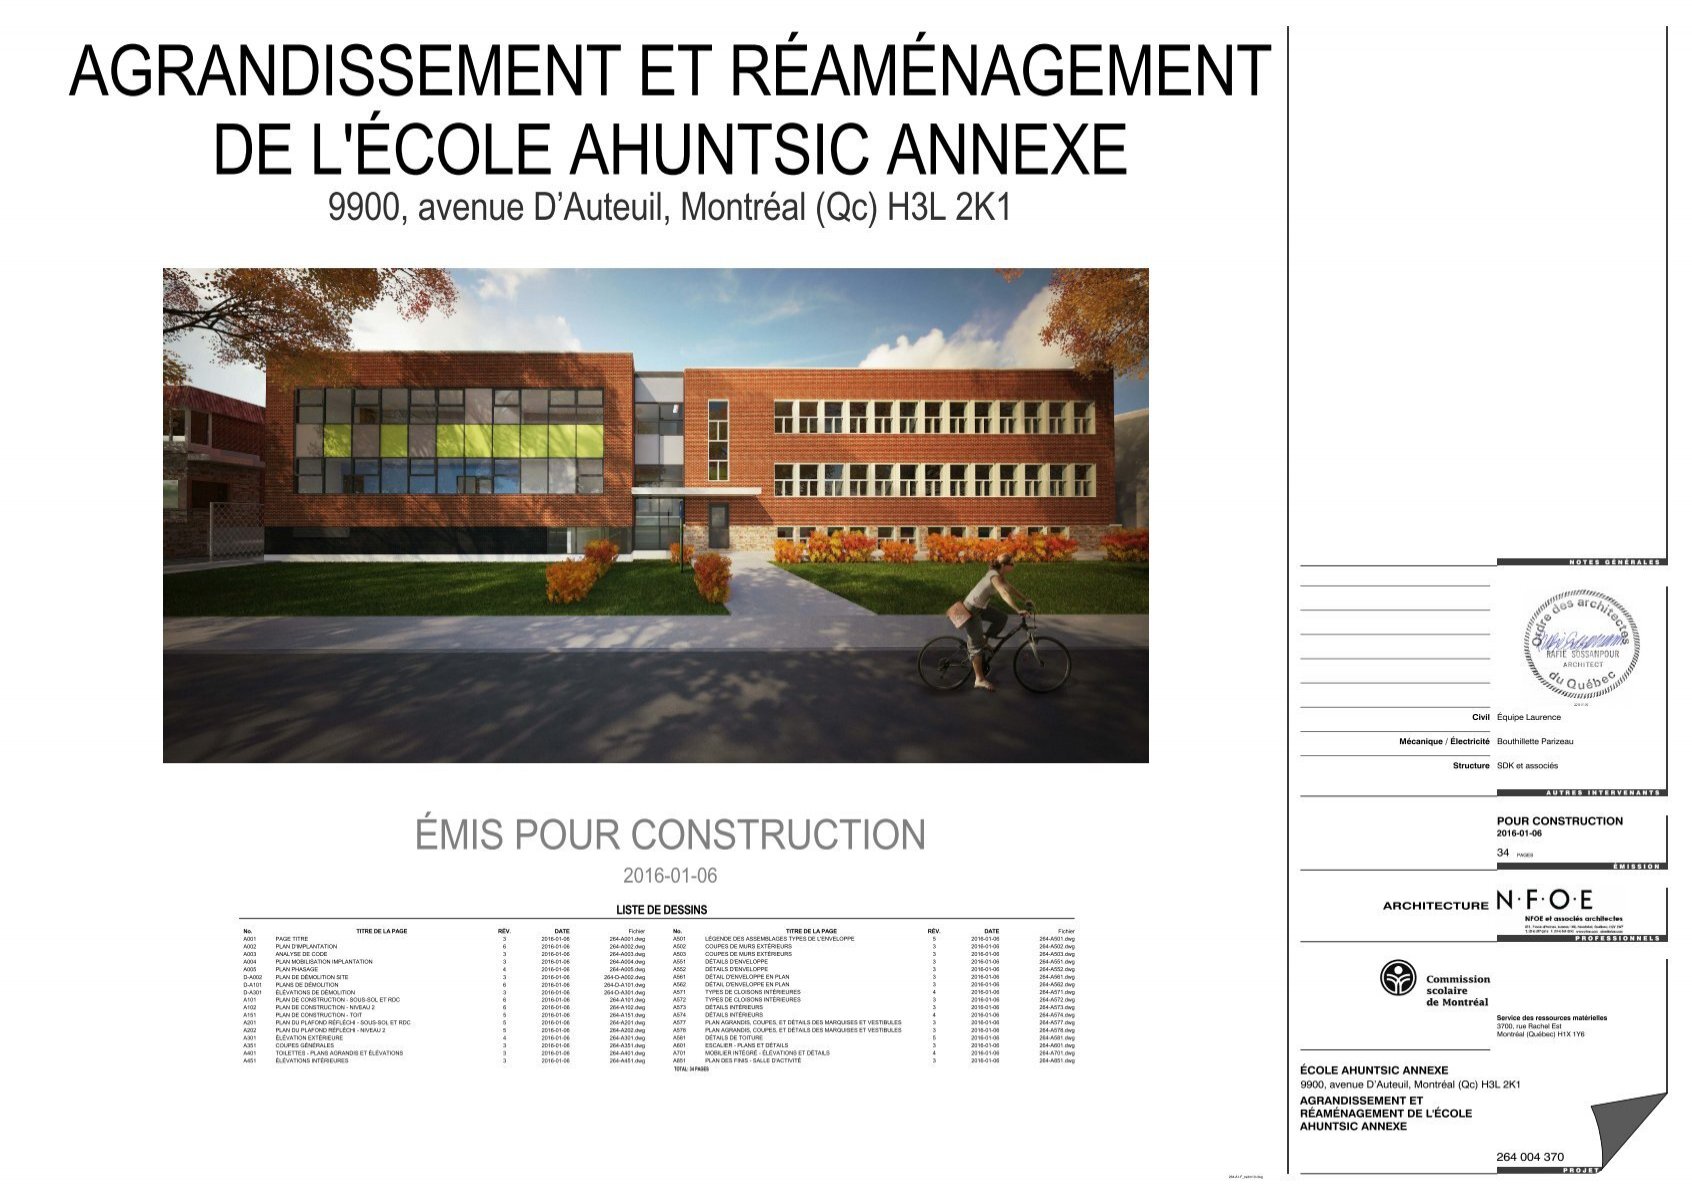 2016-01-06 - ÉMIS POUR CONSTRUCTION_14081